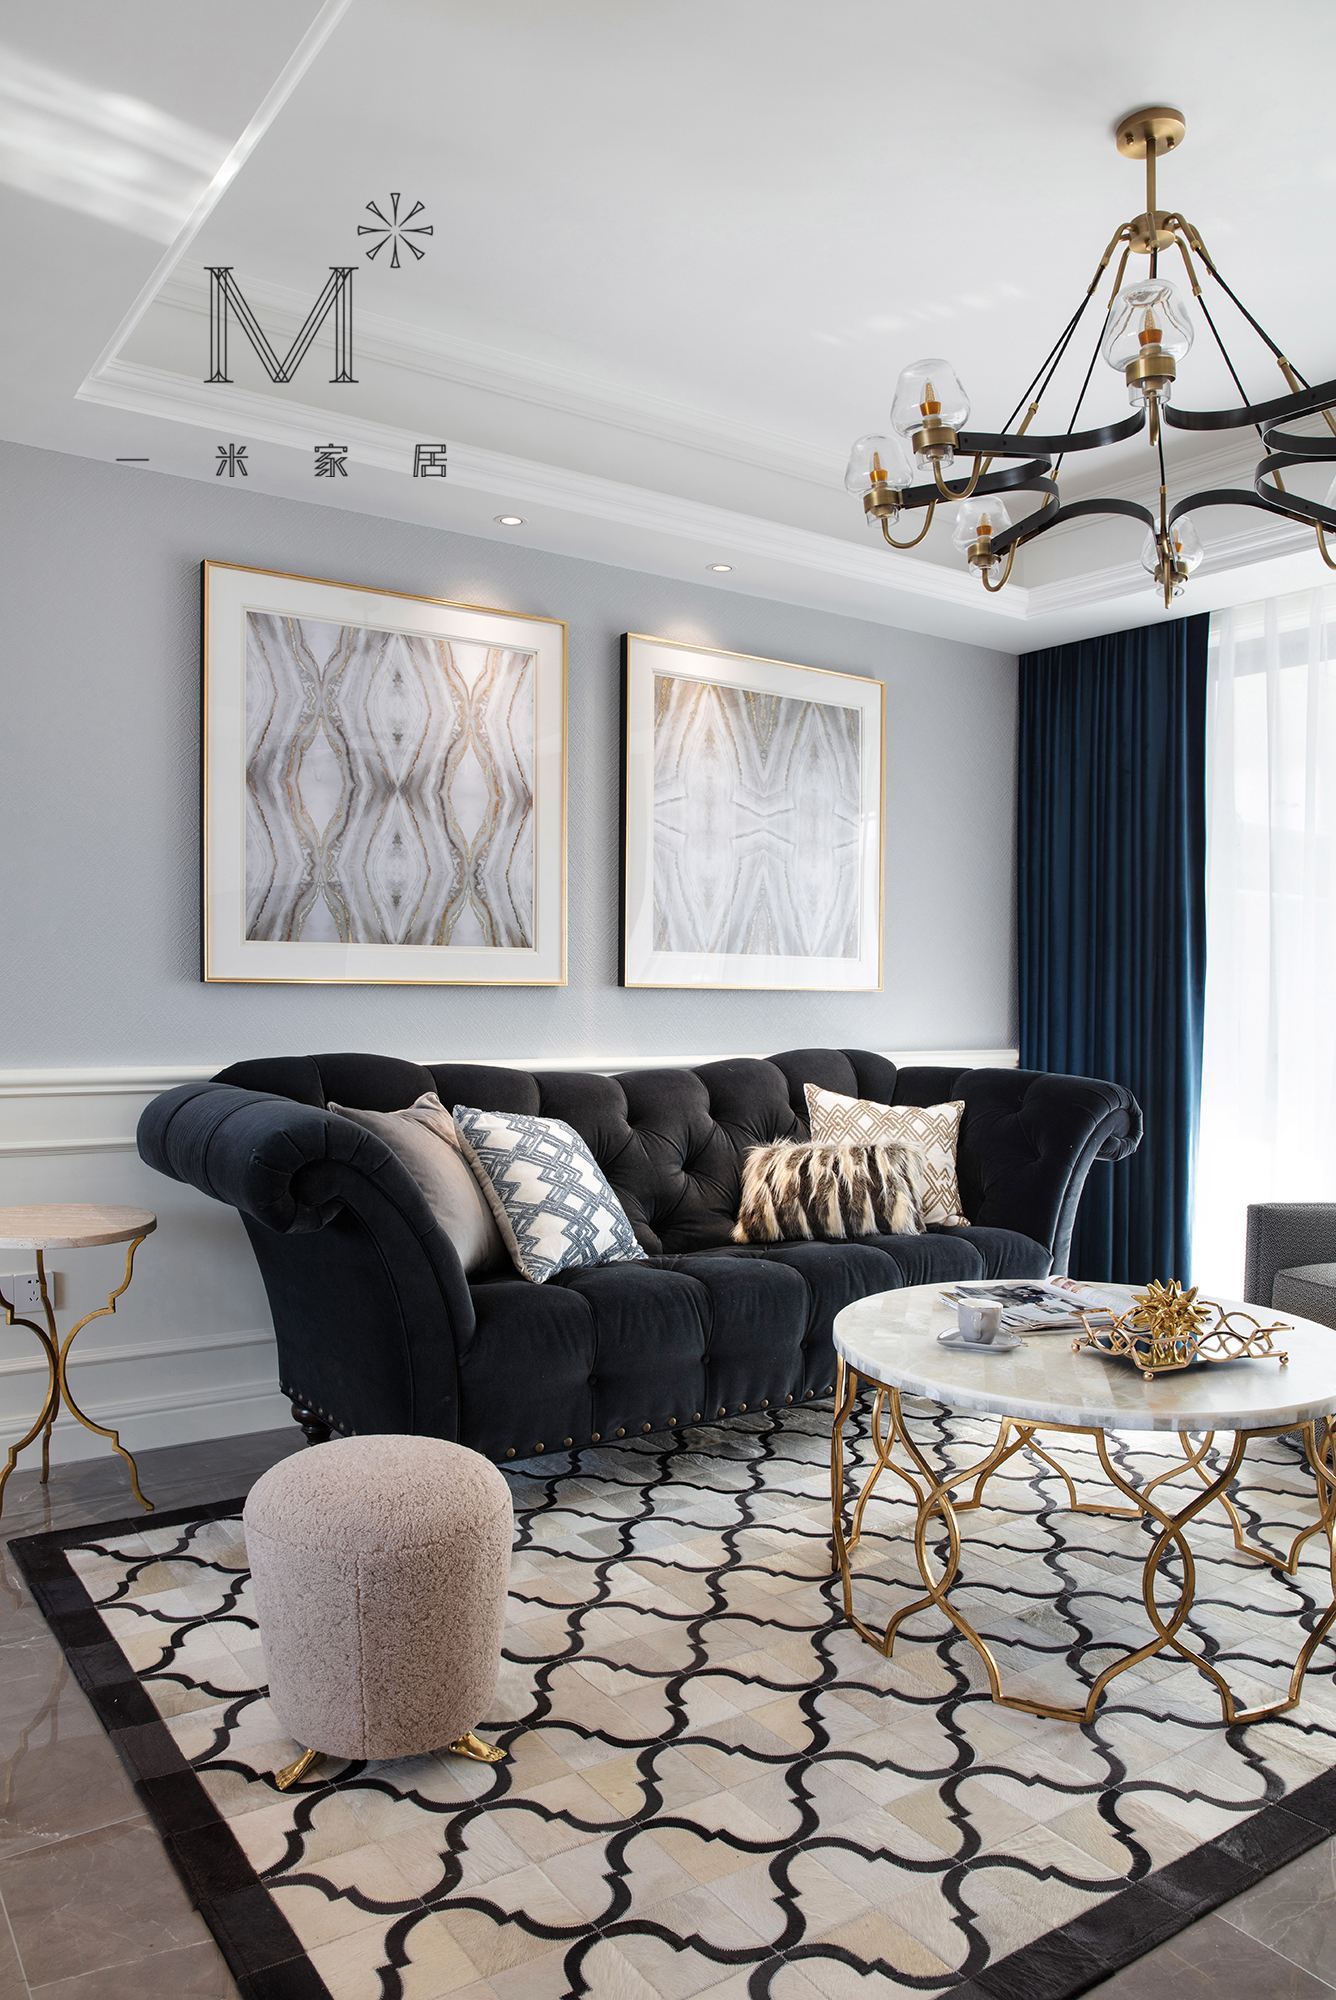 客厅窗帘1装修效果图130㎡低奢美式客厅吊灯图片美式经典客厅设计图片赏析